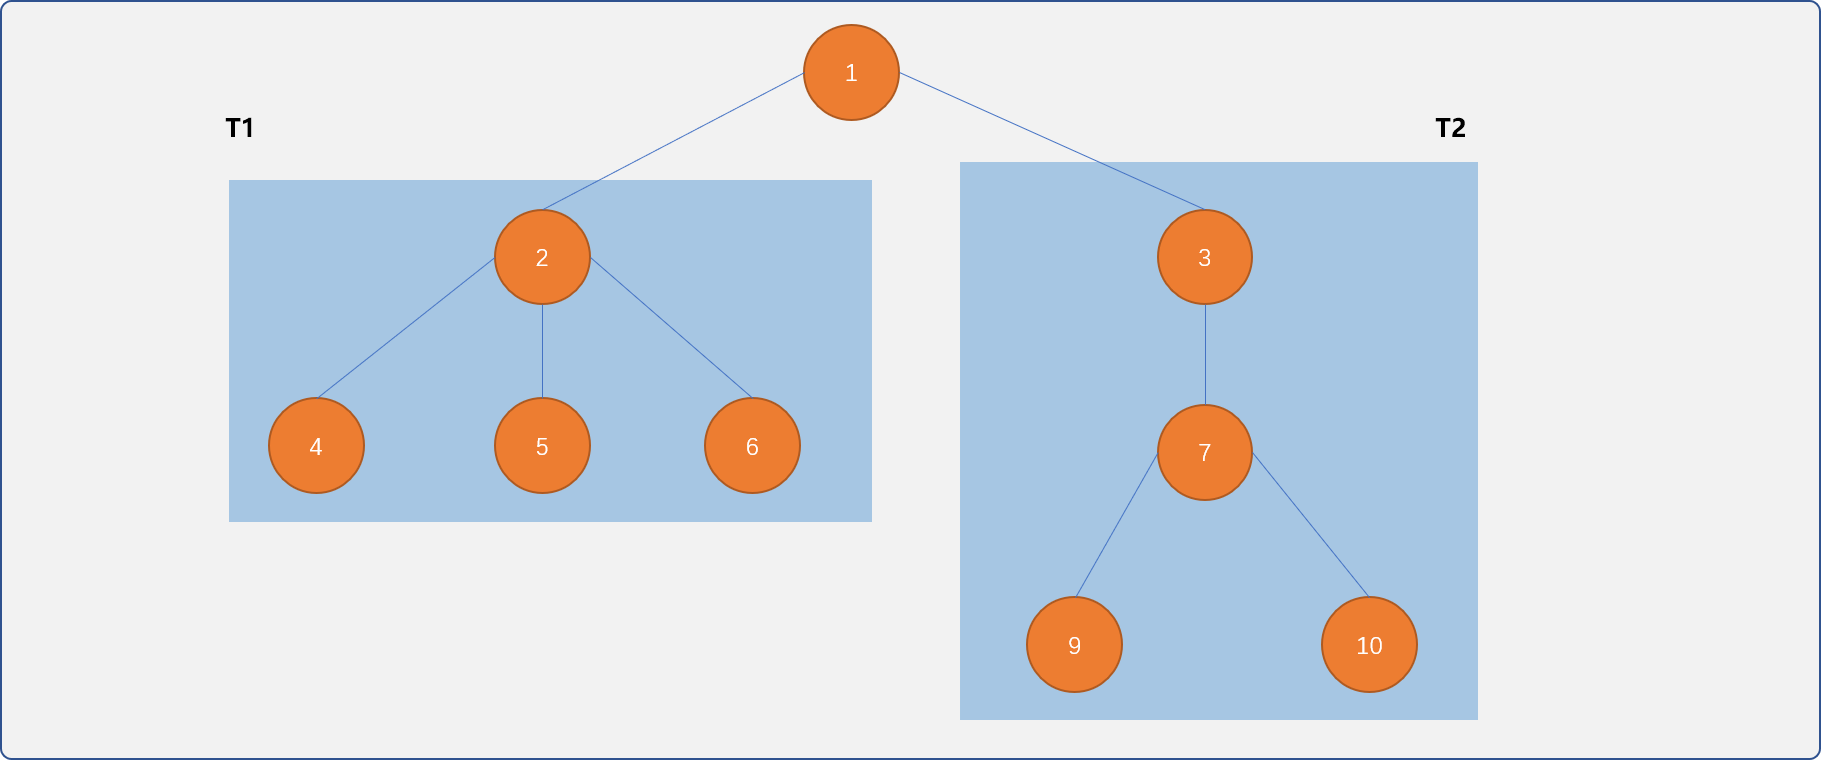 C++ 不知树系列之初识树（树的邻接矩阵、双亲孩子表示法……）